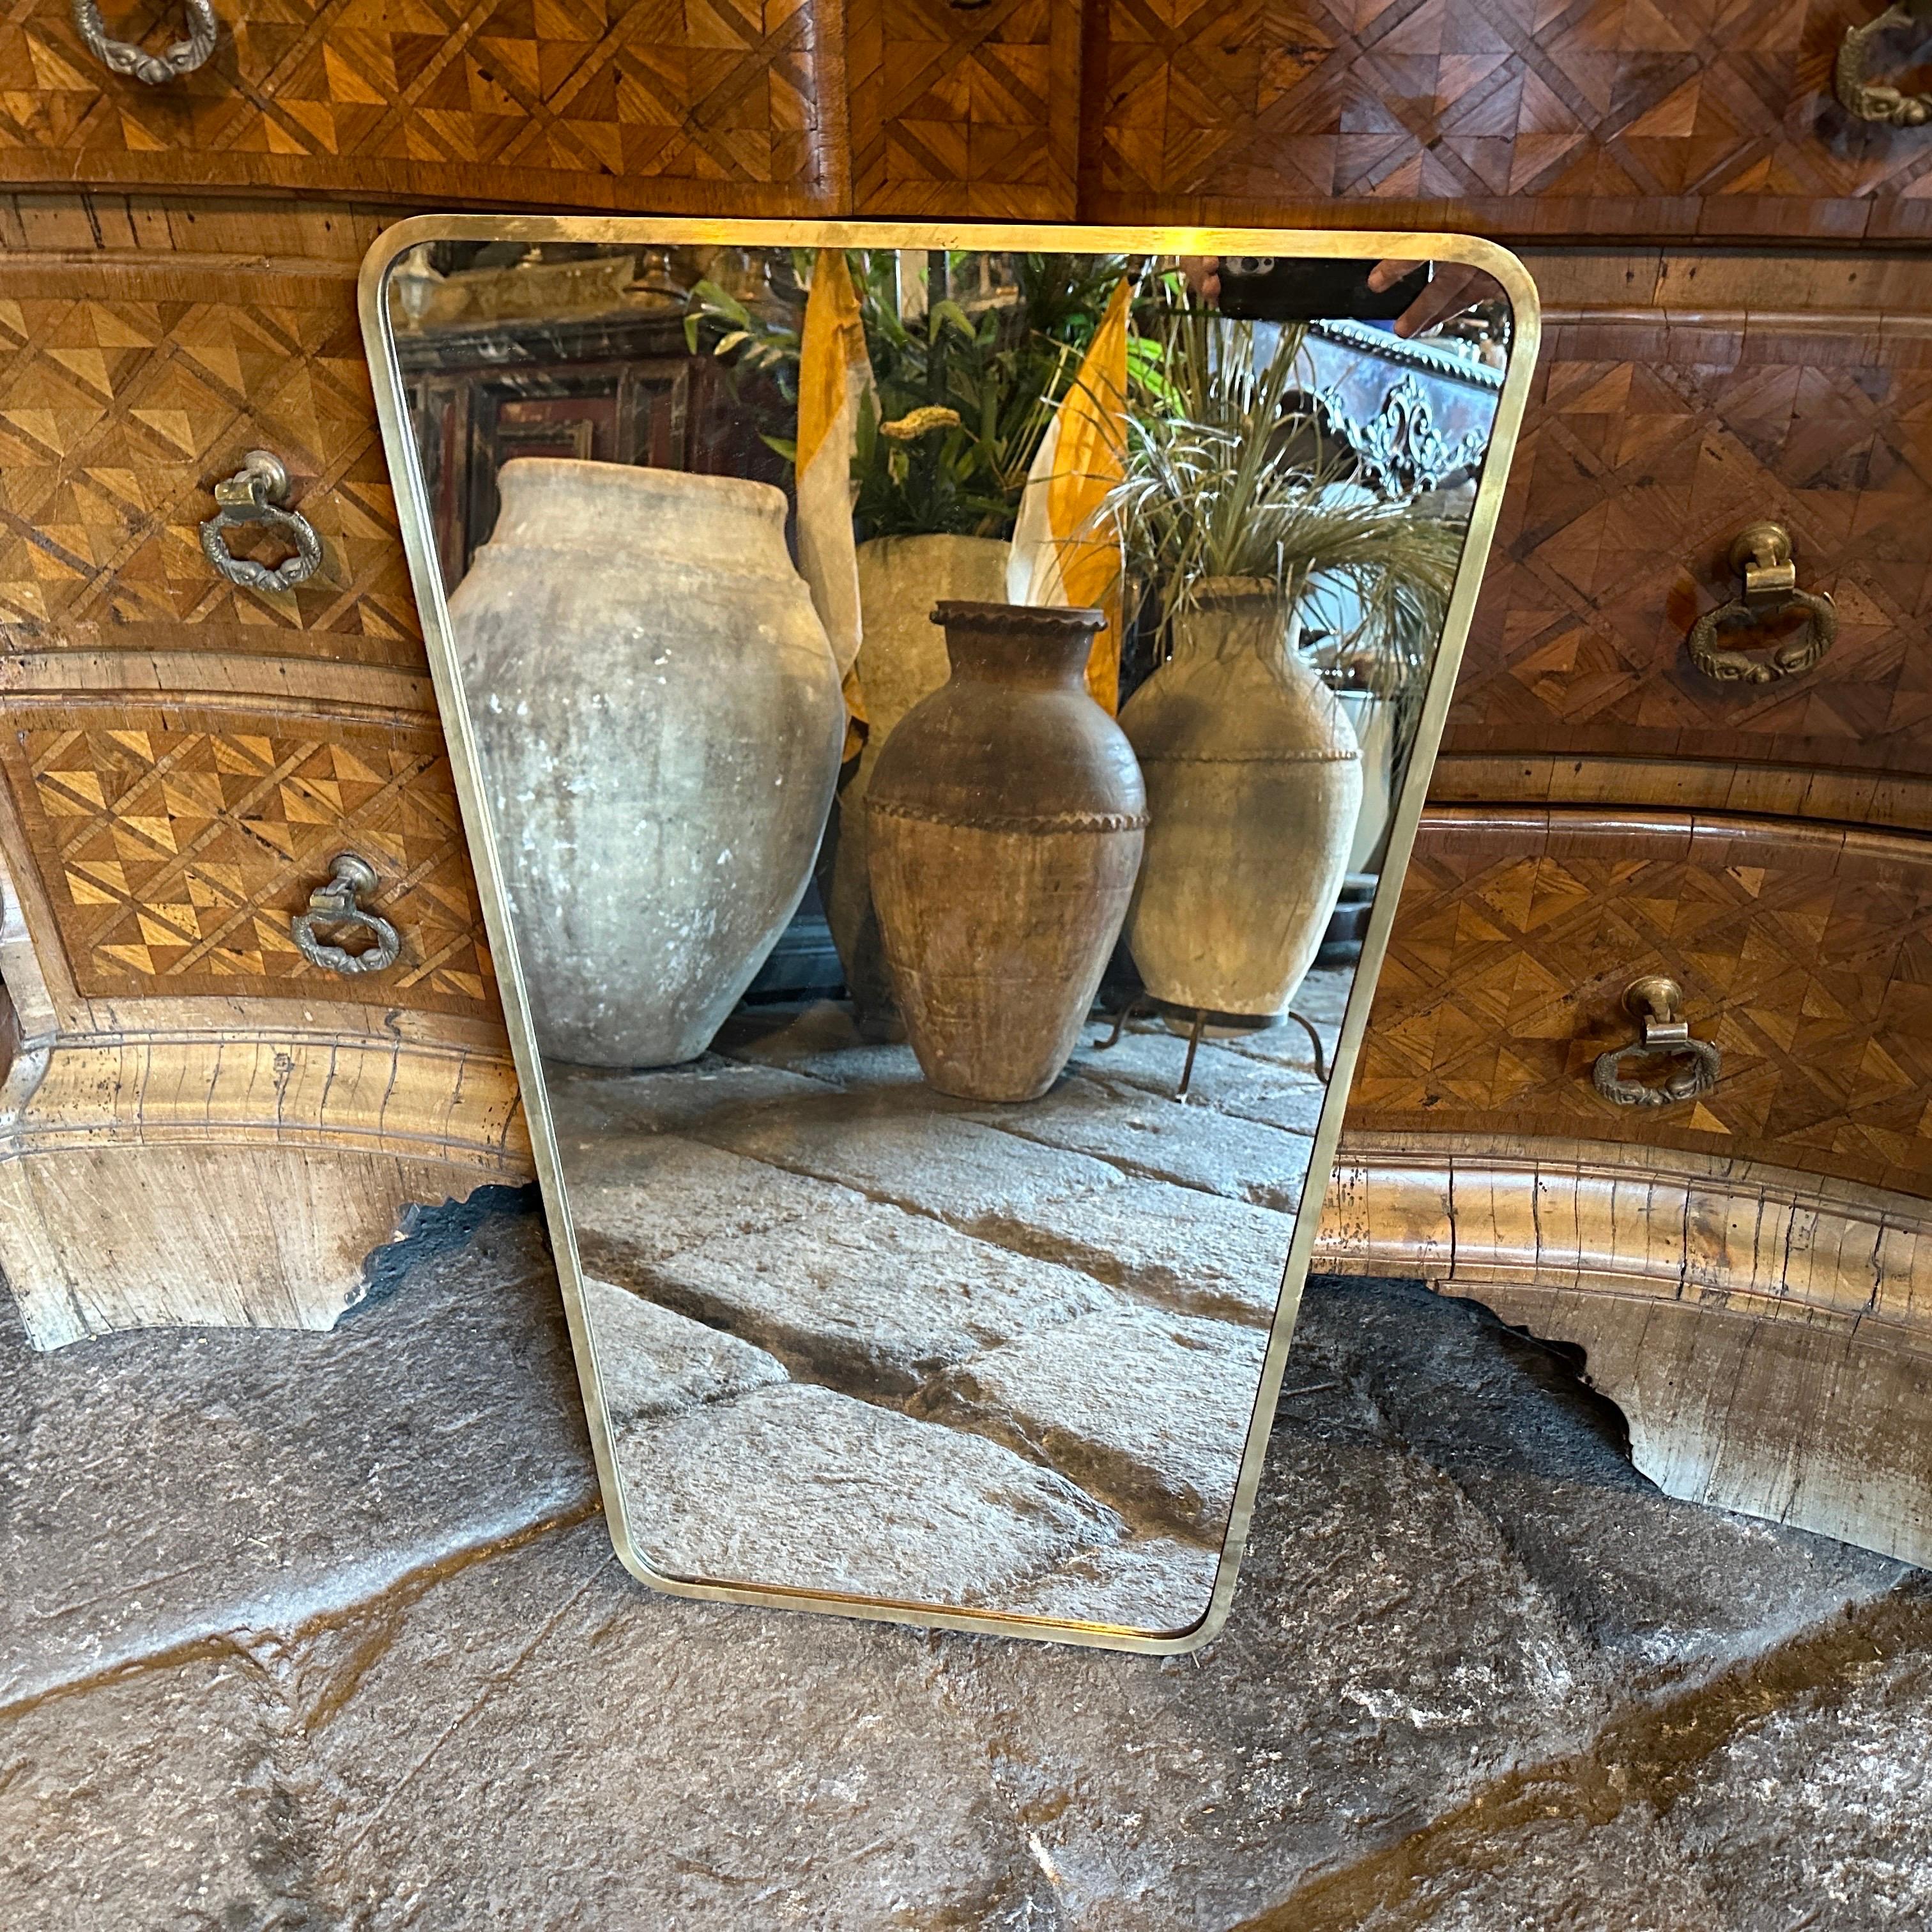 Miroir mural en laiton massif conçu et fabriqué en Italie à la manière de Gio Ponti, qui utilisait ce type de miroir dans les plus belles maisons de Milan dans les années 50. Le laiton présente une belle patine d'origine, tandis que le verre reste